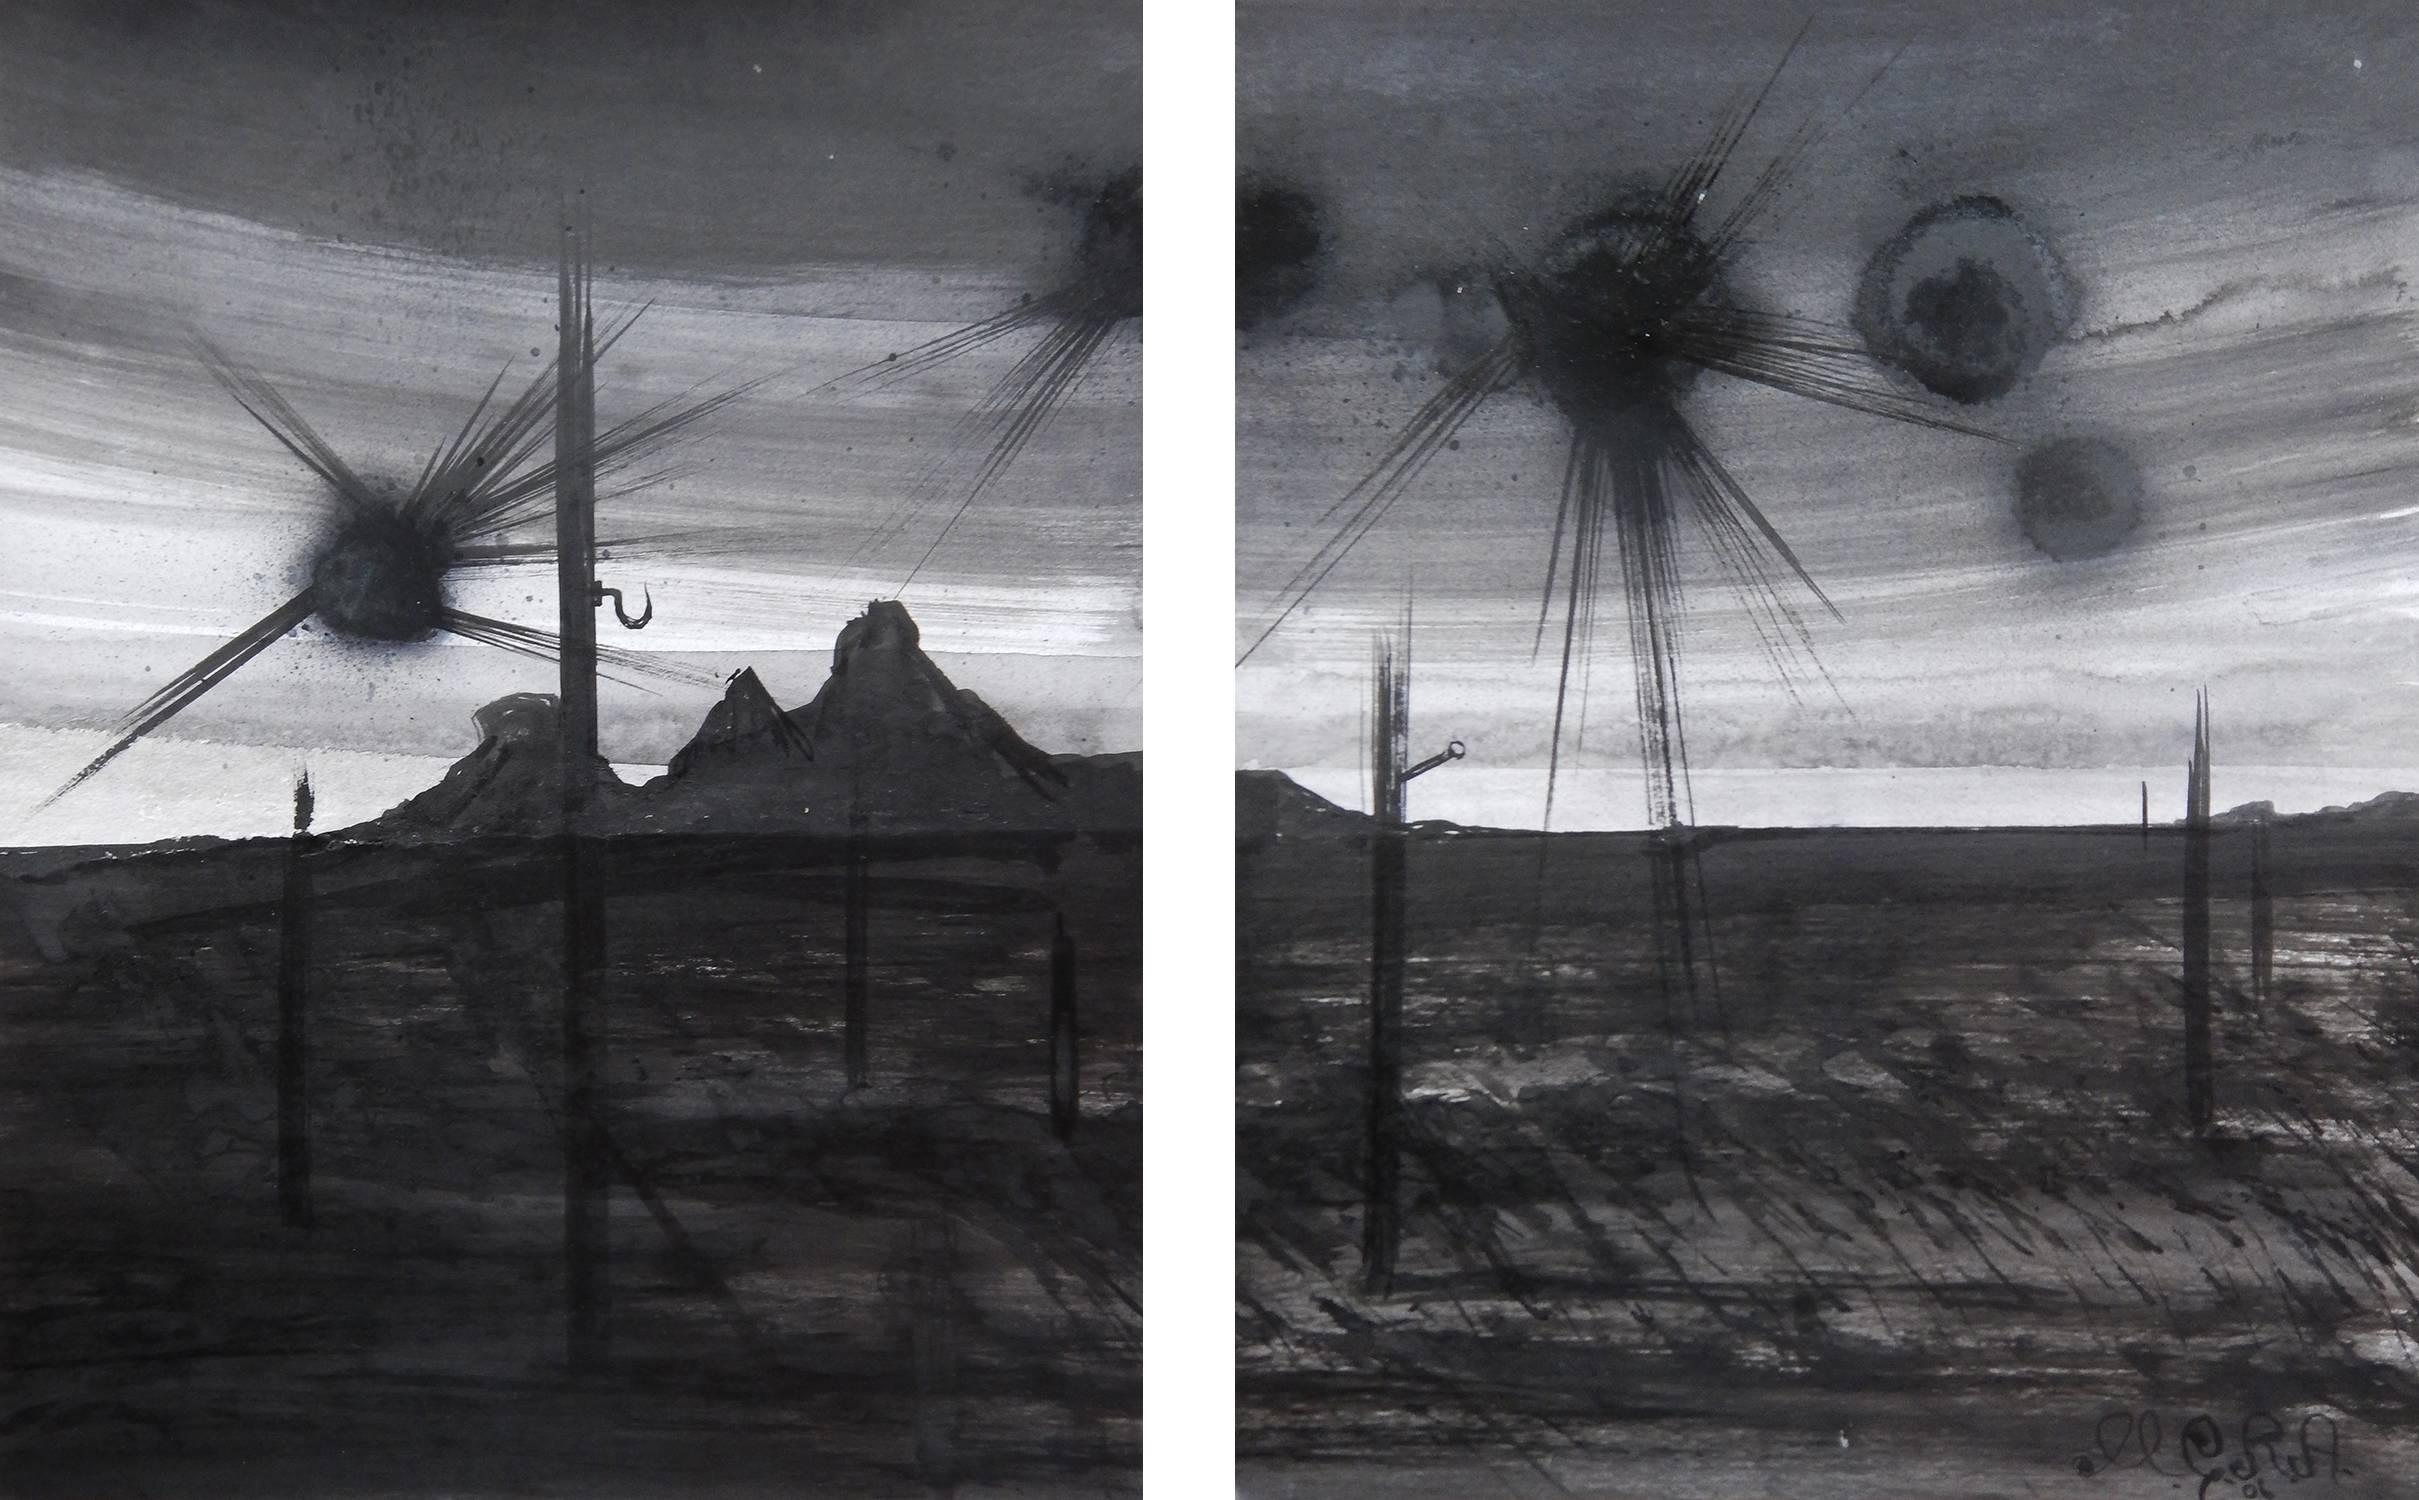 Landscape Art Michael Ricardo Andreev - Plasma évasé avec contrastes au crépuscule 2